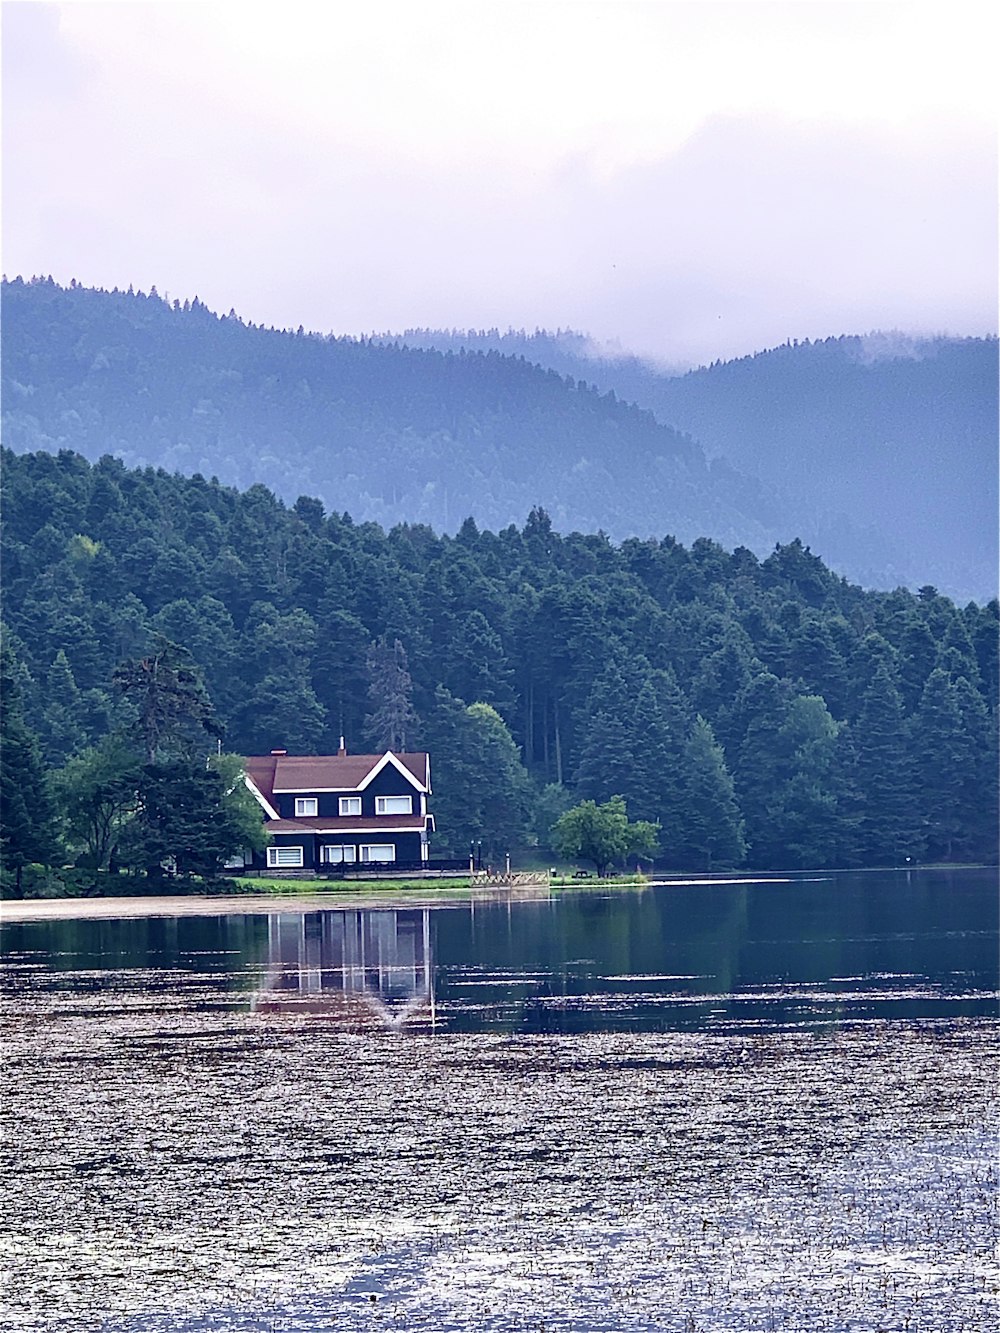 casa de madeira marrom no lago perto de montanhas verdes durante o dia